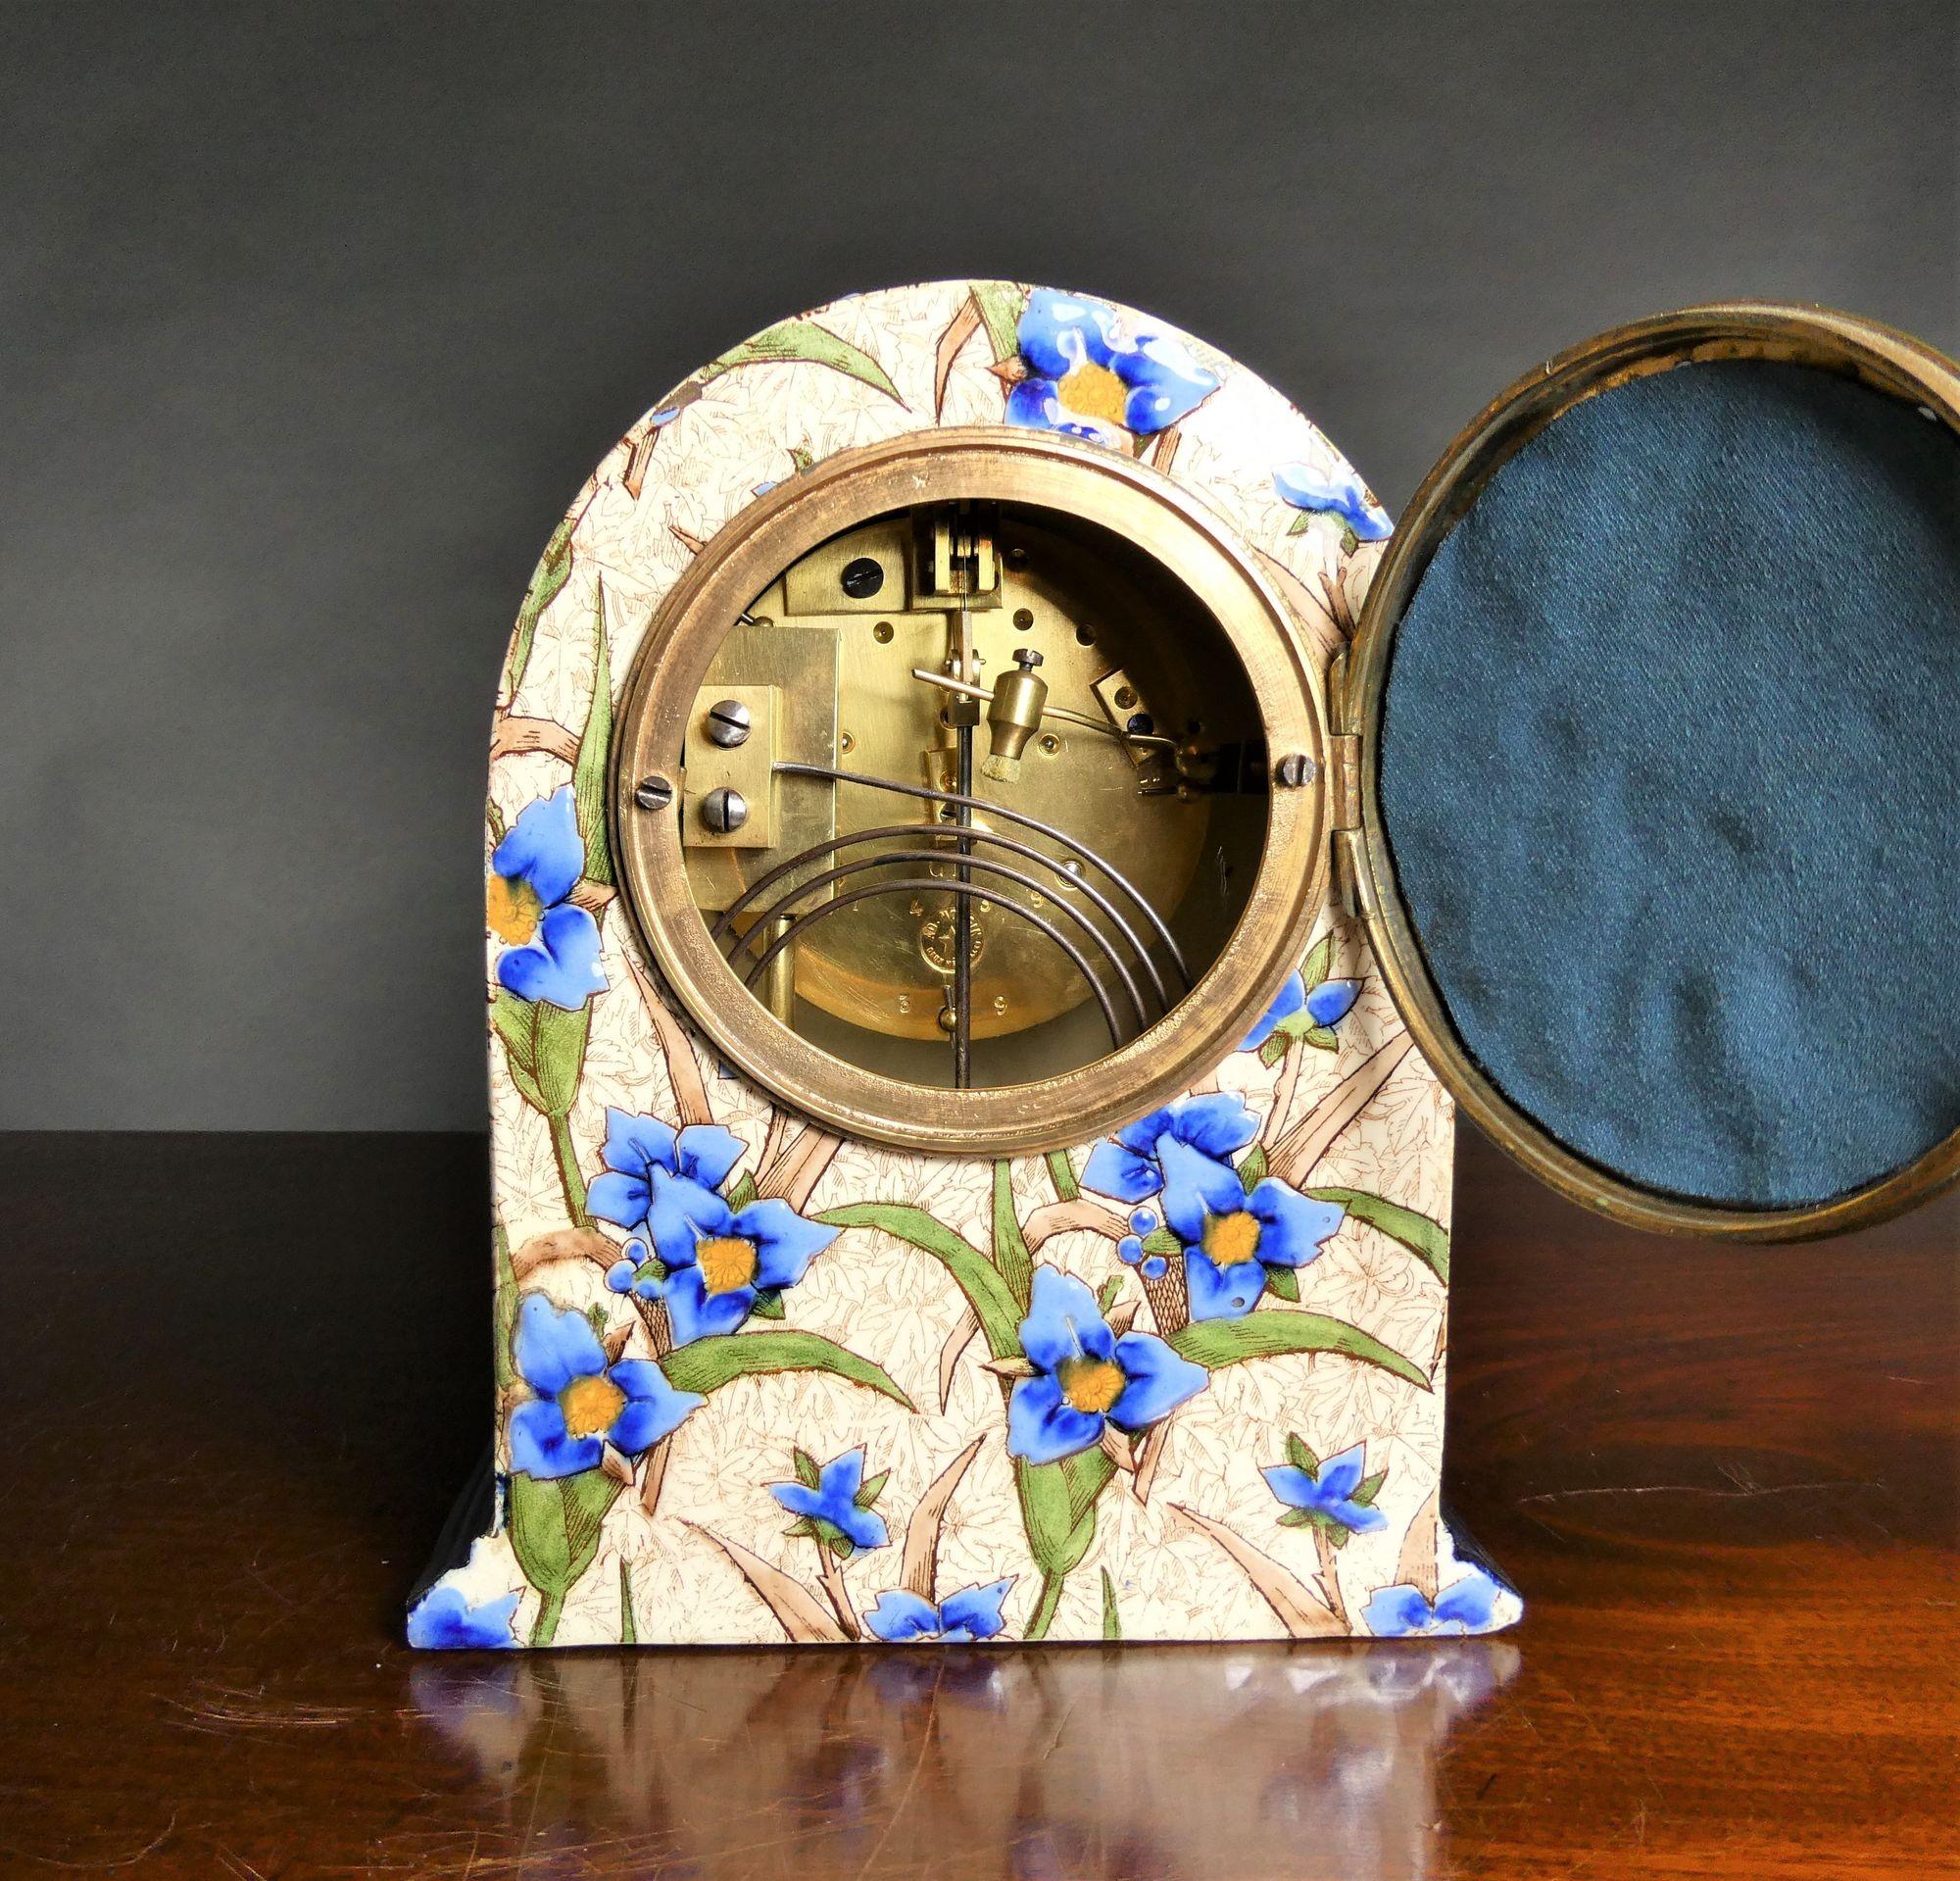 Französische dekorative Porzellan-Uhr-Garnitur
 
Französische Kaminsimsuhr in einem gewölbten Porzellangehäuse, das an allen Seiten schön mit Blumenreliefs verziert ist und auf einem  dunkelblauer Stufensockel.
Vergoldete und ziselierte Lünette, die